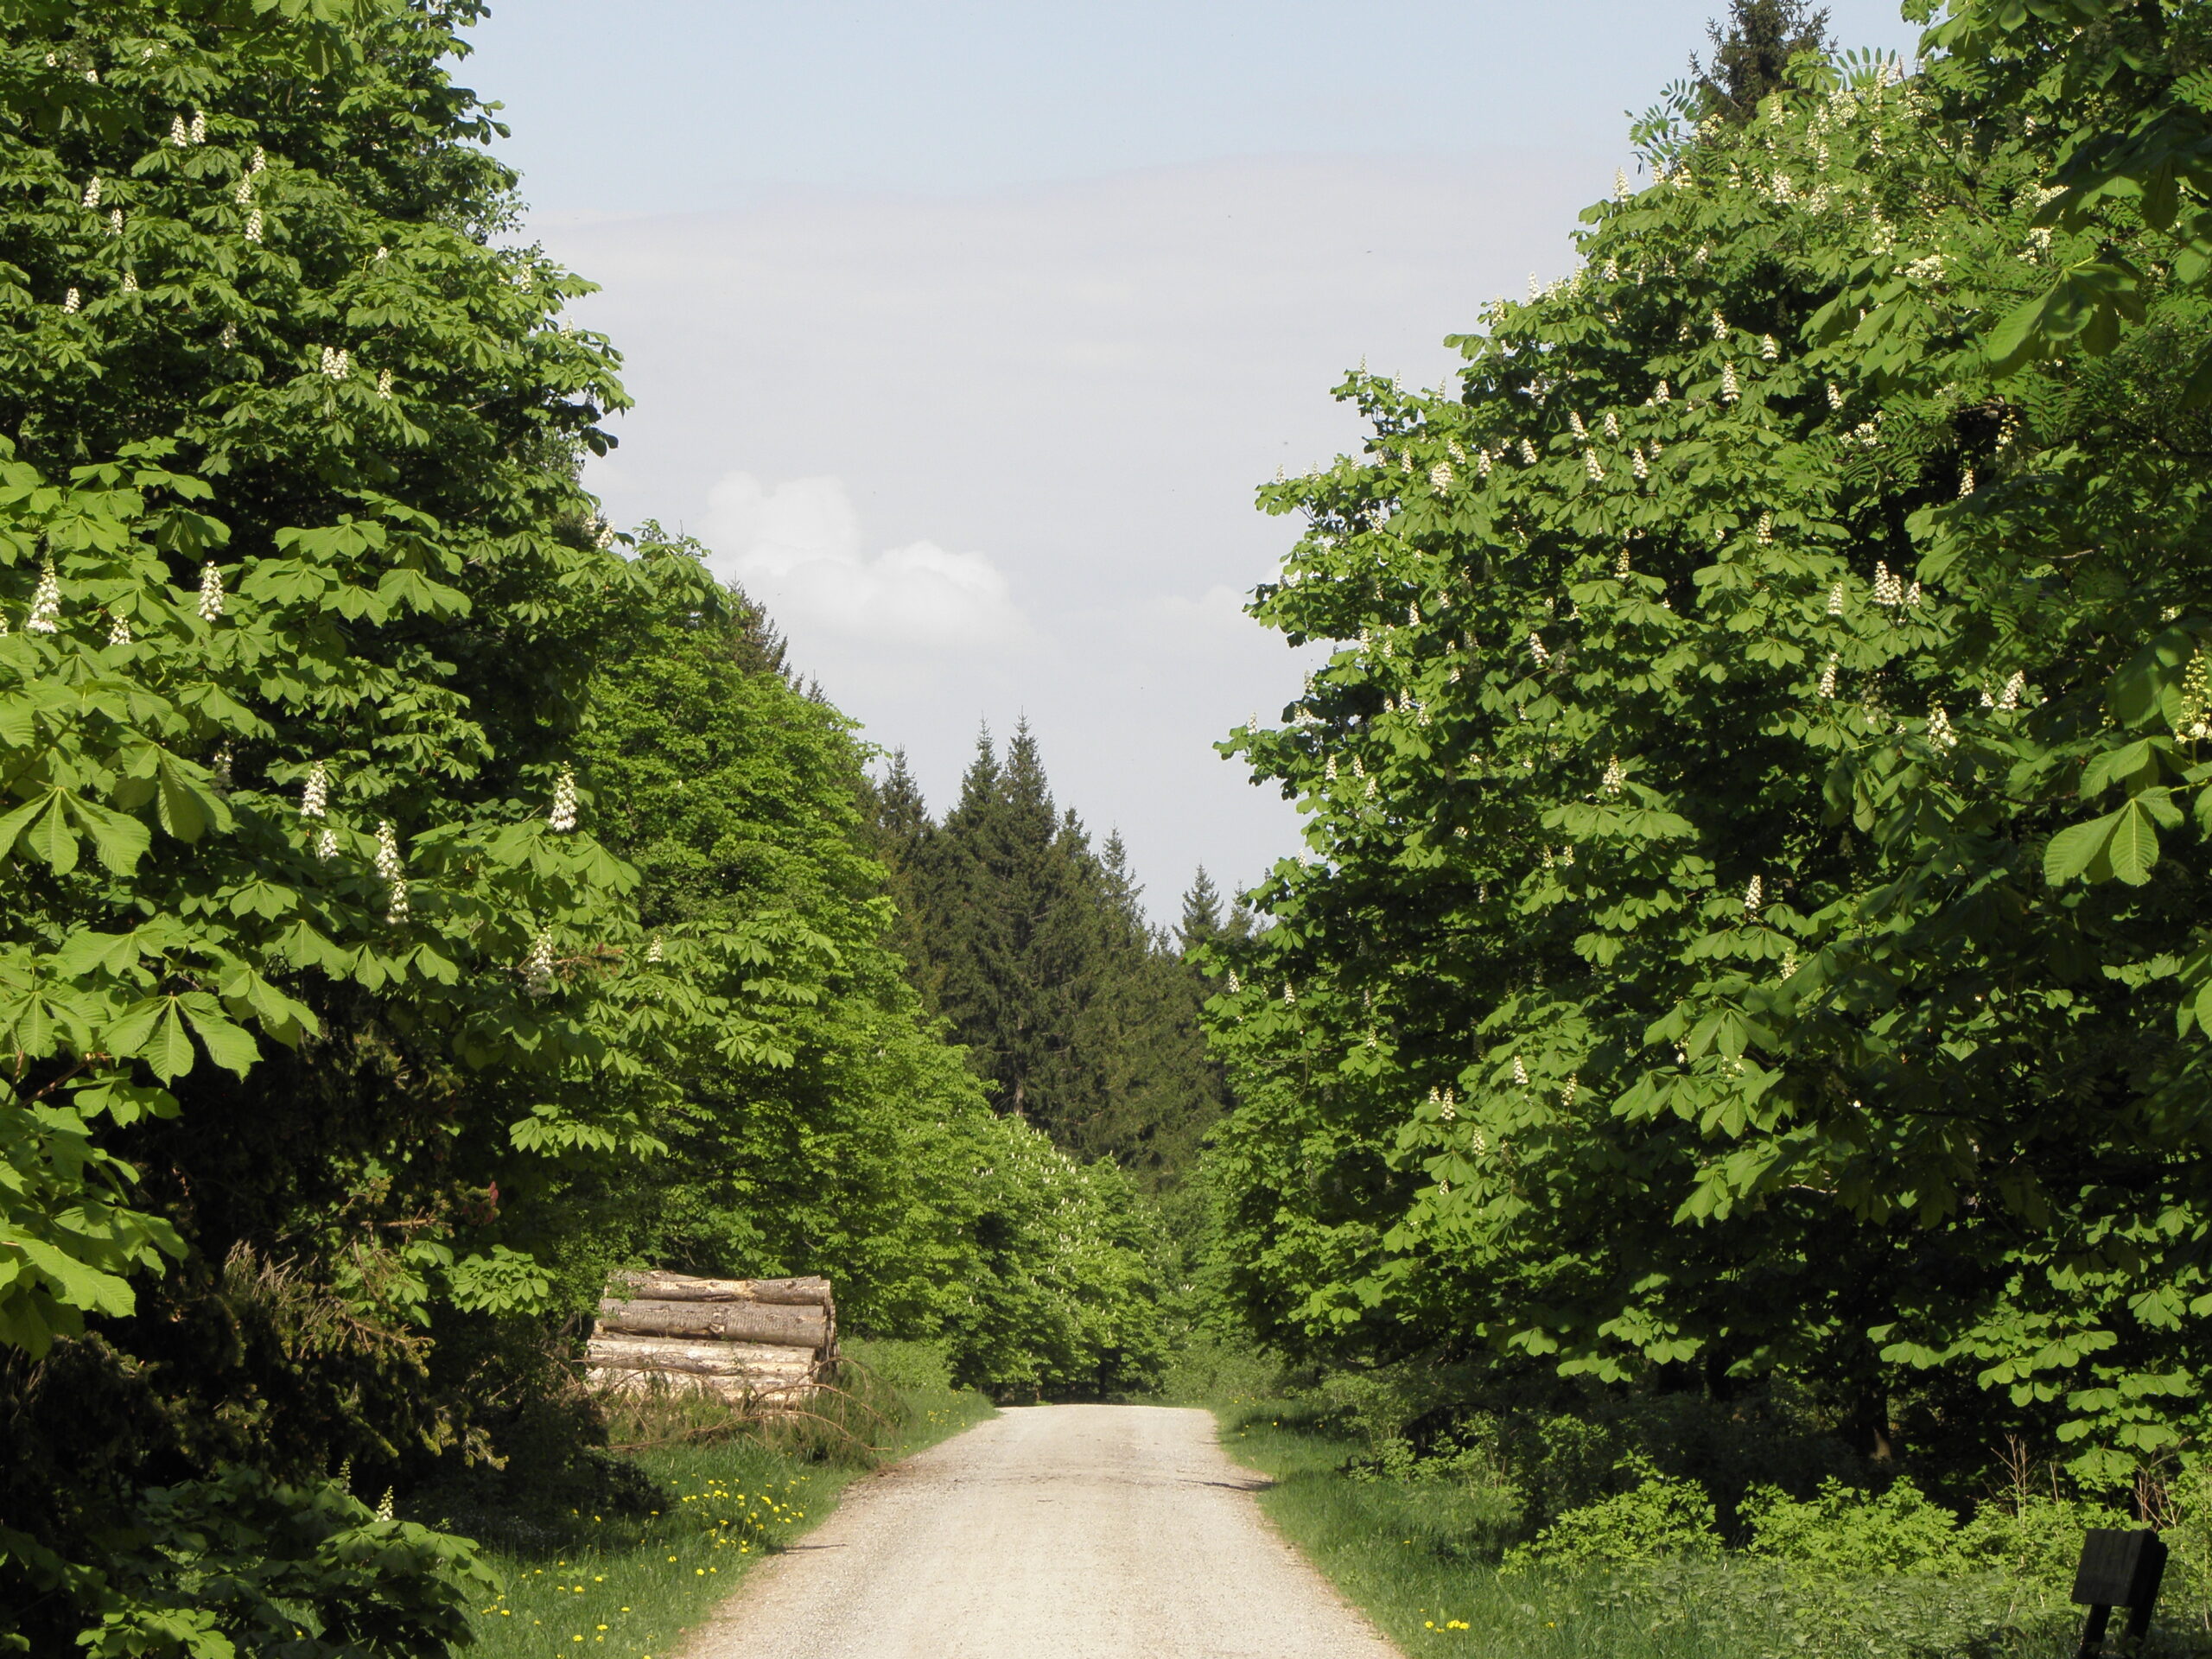 Ein breiter Wanderweg führt entlang blühender Kastanienbäume. Am Wegesrand sind Holzstapel